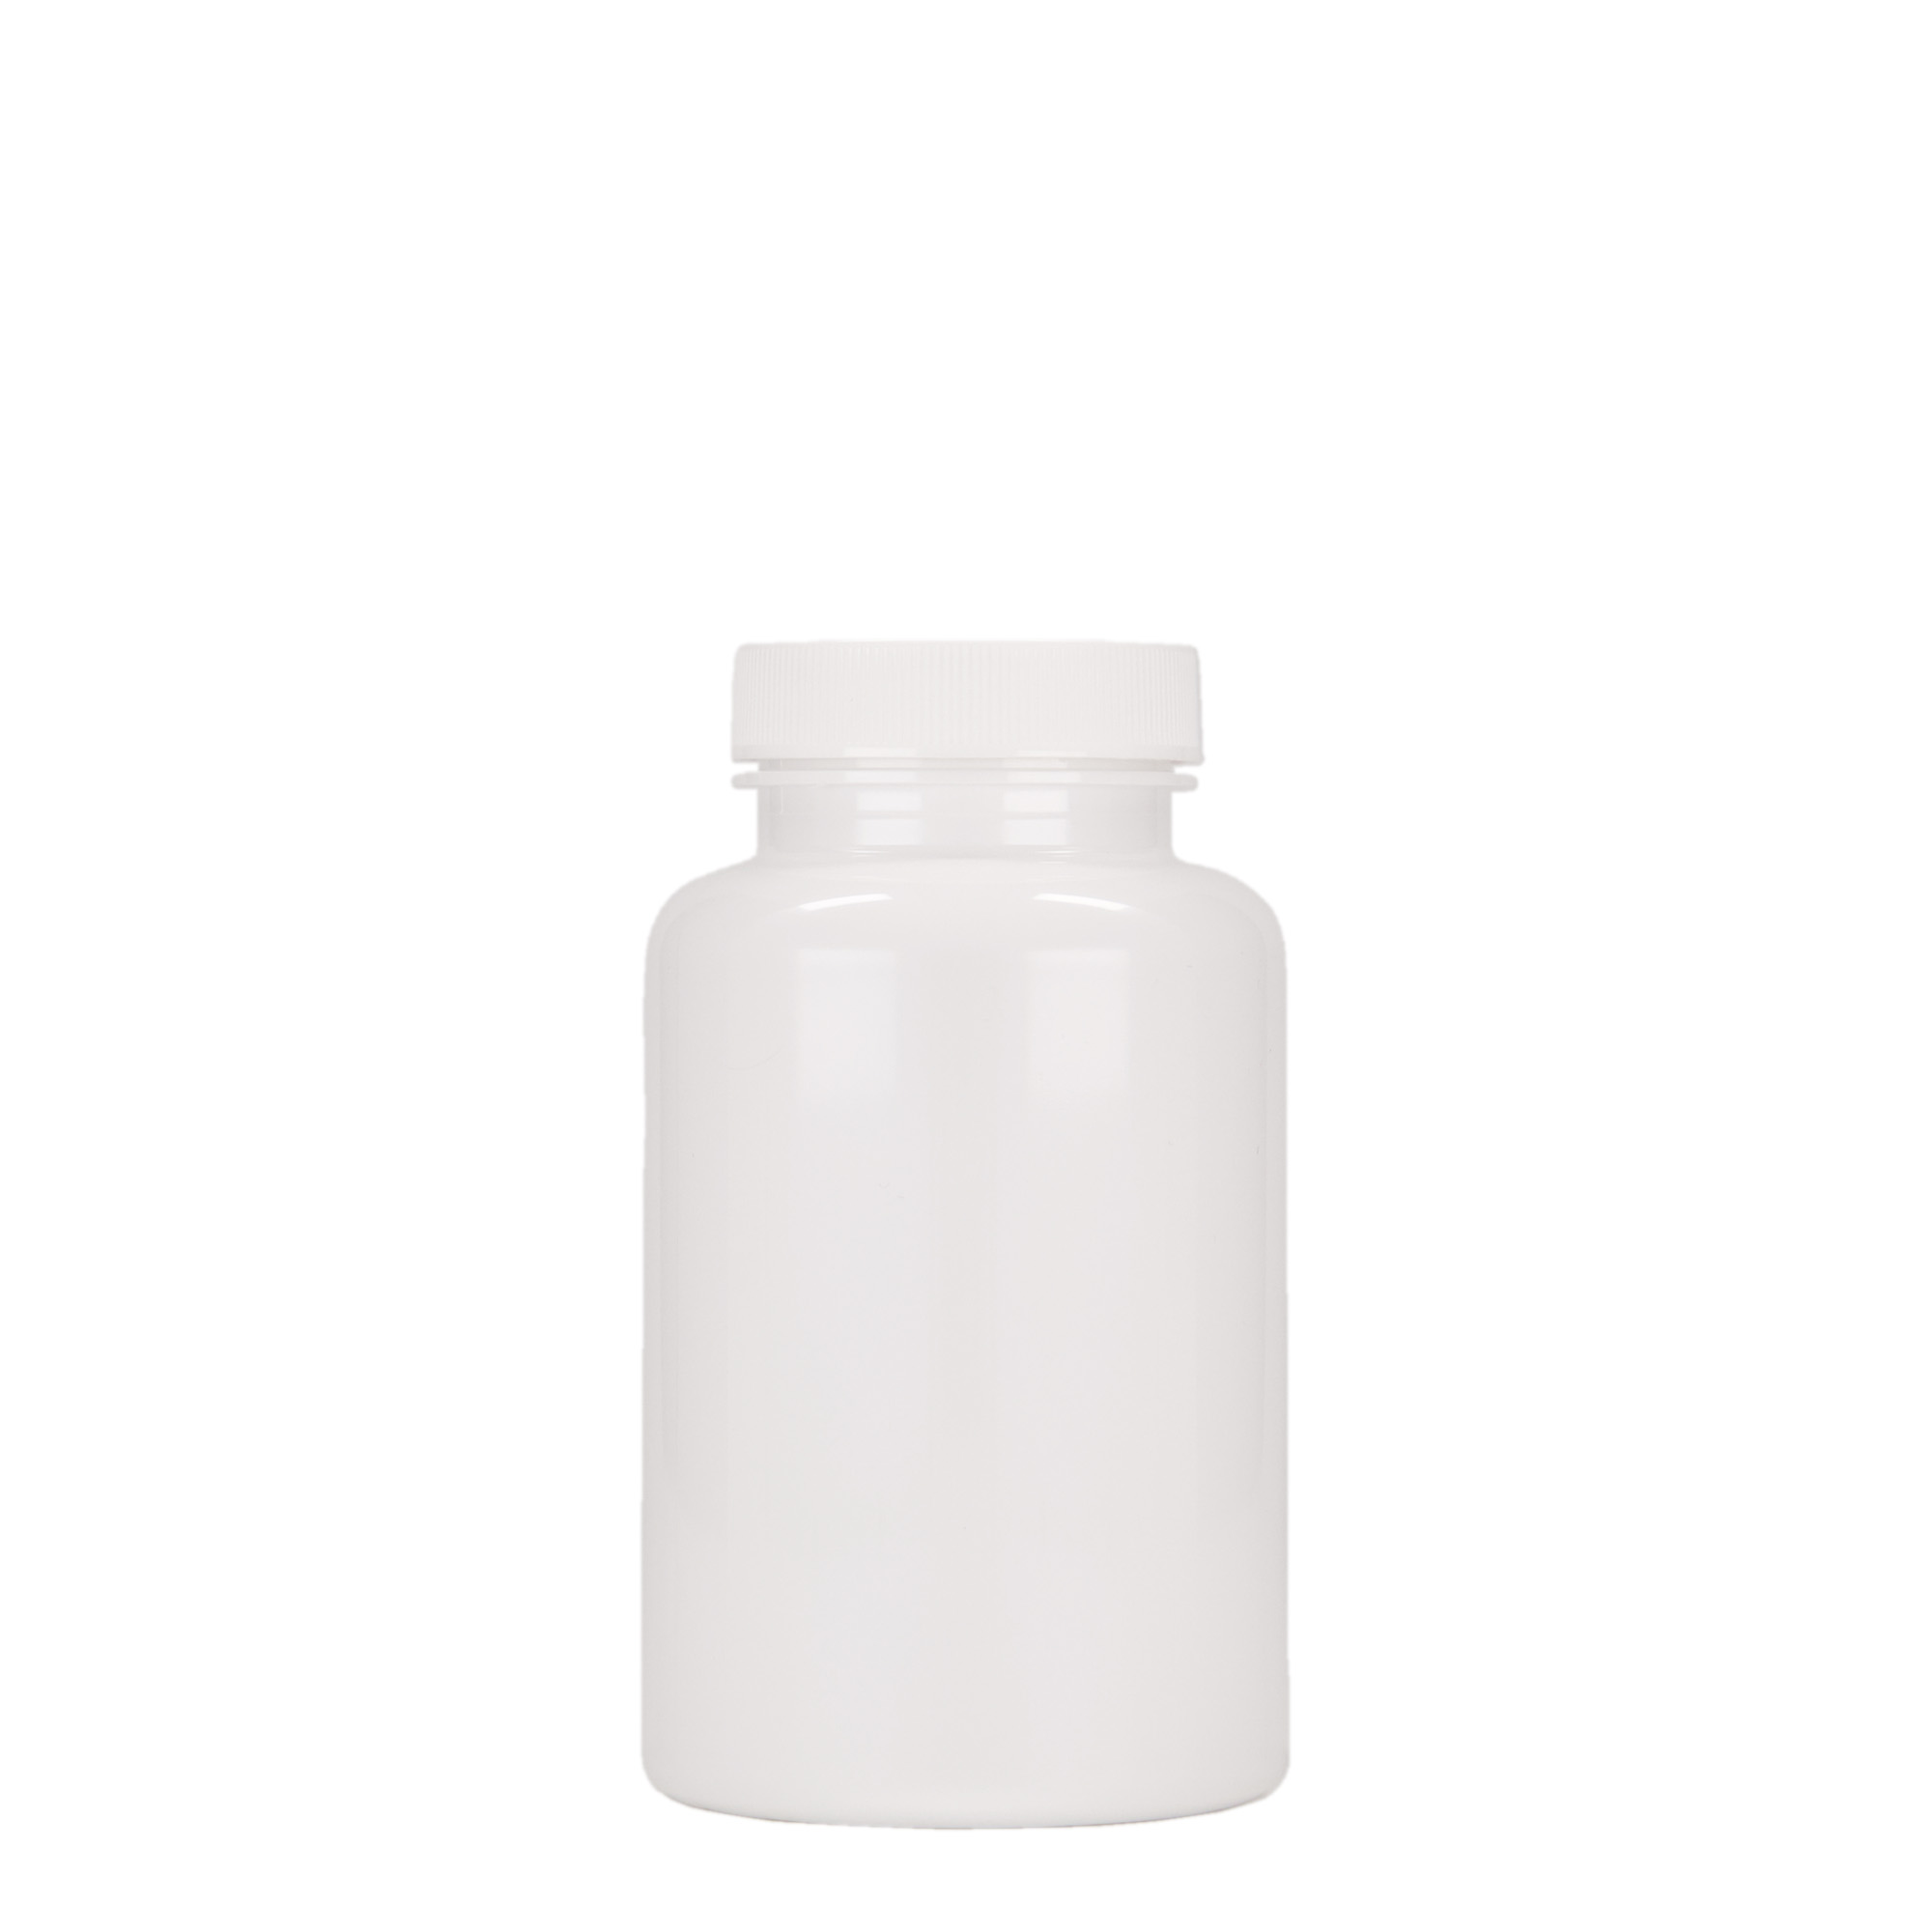 250 ml PET packer, plastic, white, closure: GPI 45/400